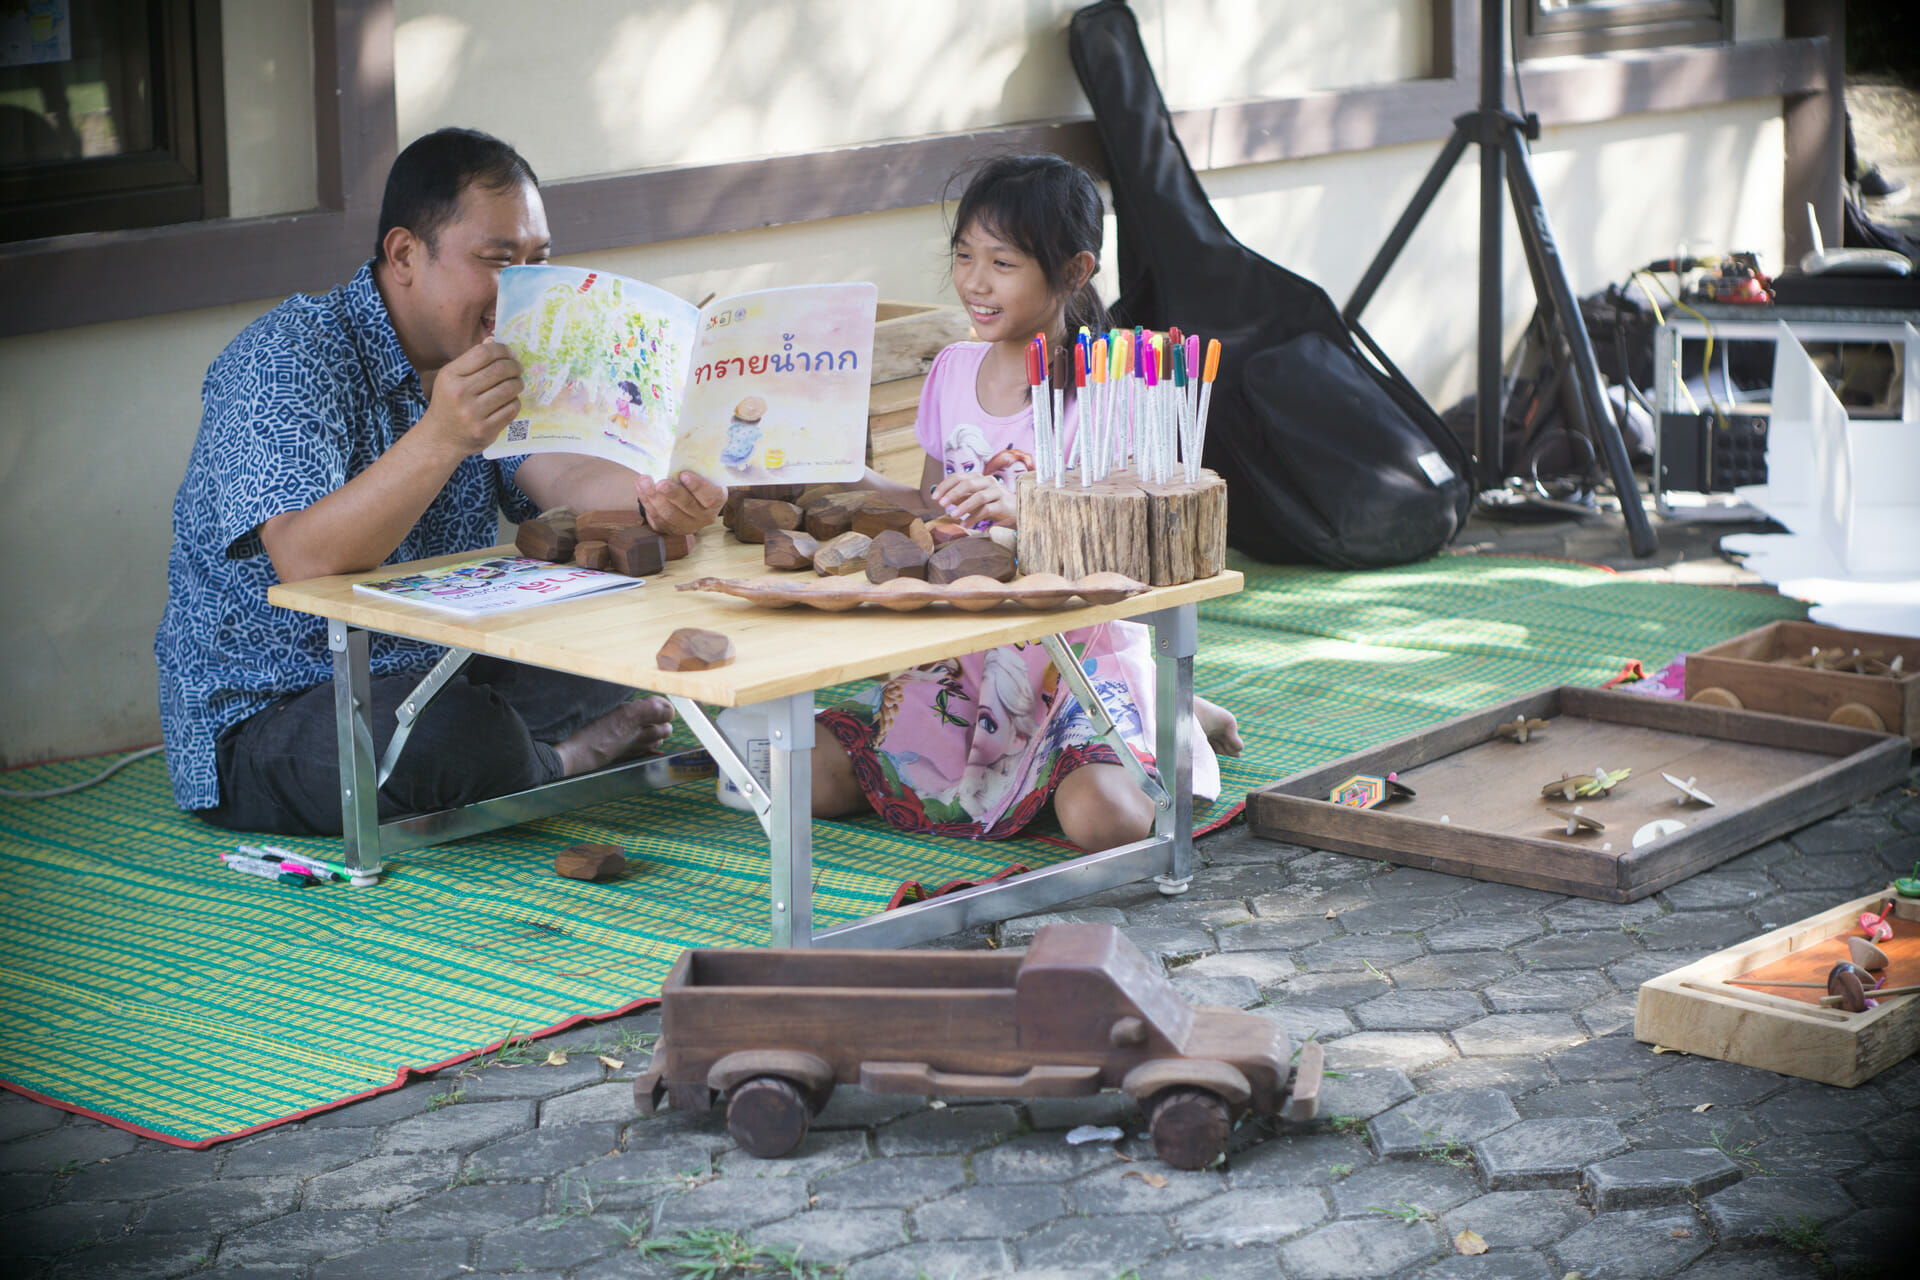 จาก ‘One Book One City’ ถึง ‘อ่านทั้งเมืองเรื่องเดียวกัน’ นวัตกรรมส่งเสริมการอ่านระดับสากล ที่เริ่มผลิดอกออกผลในไทย